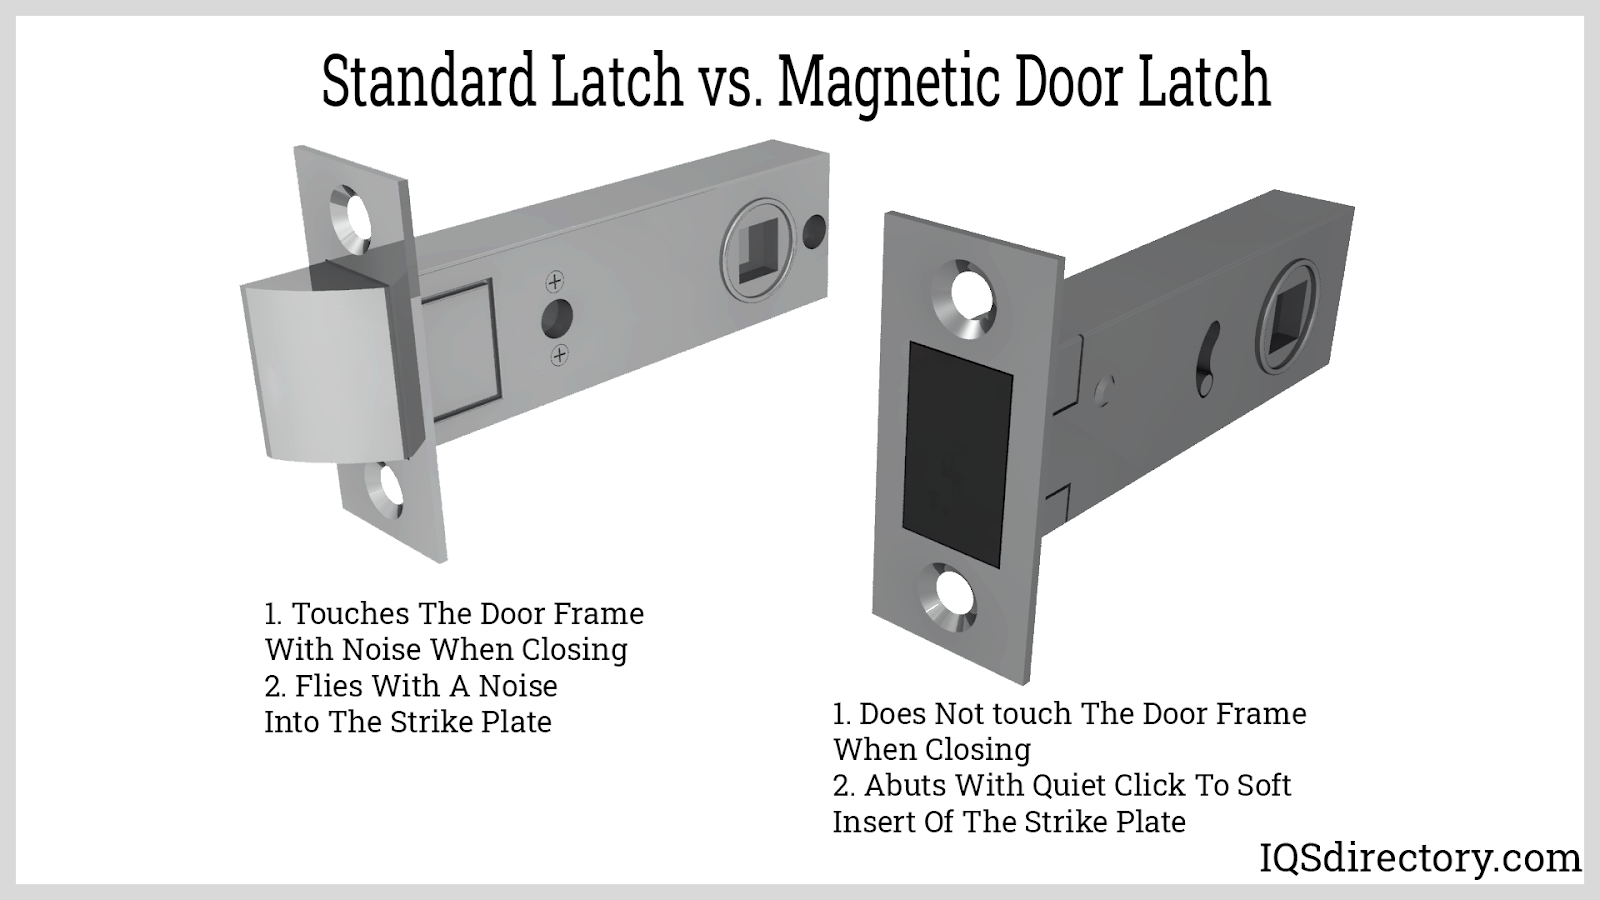 Standard Latch vs Magnetic Door Latch